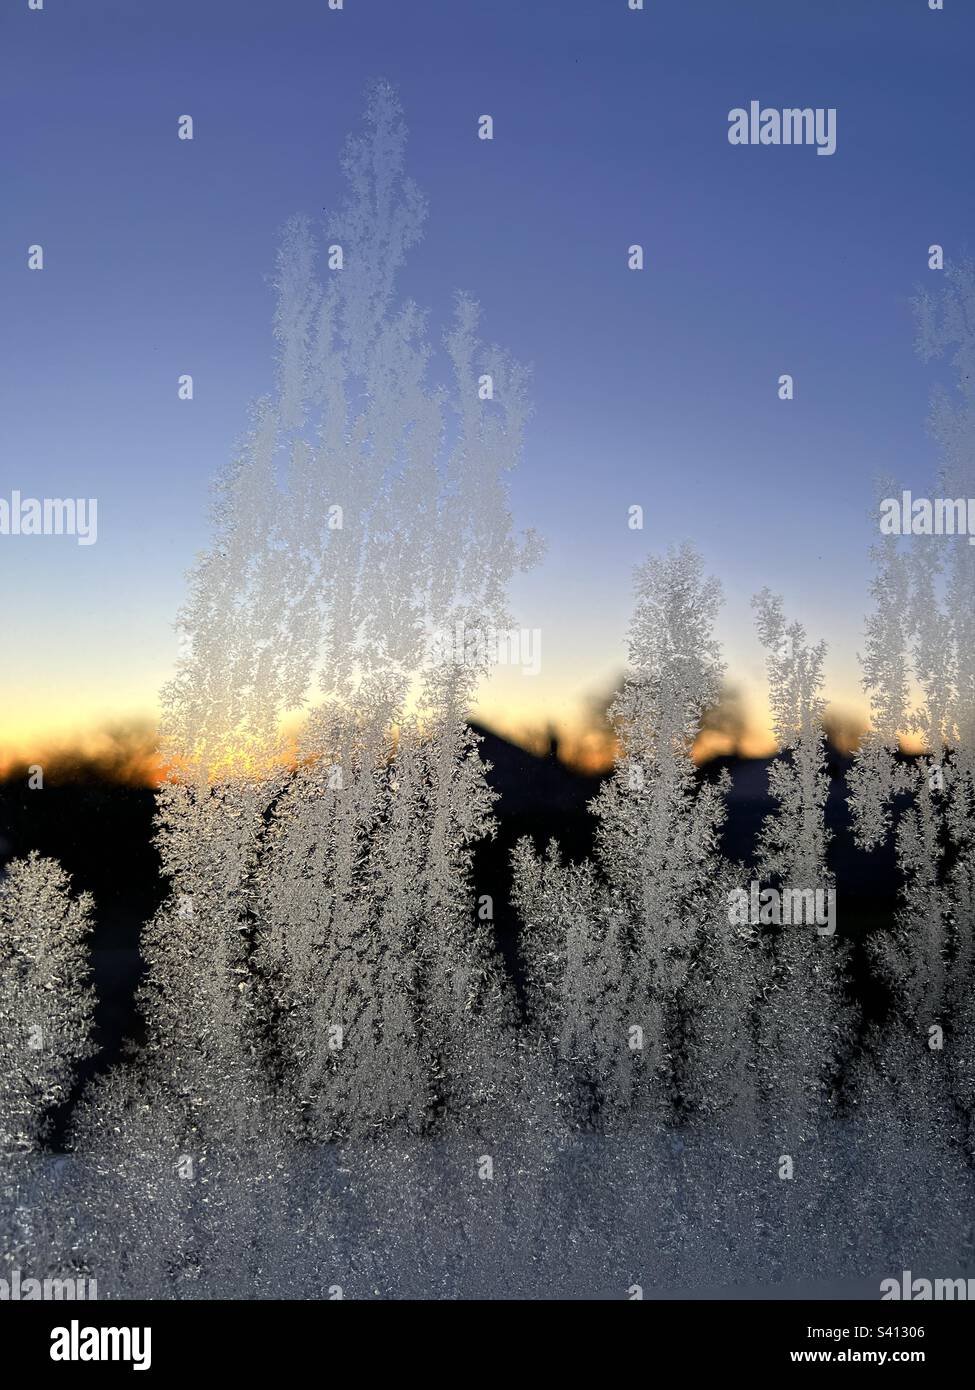 Cristaux de glace sur une fenêtre au lever du soleil Banque D'Images